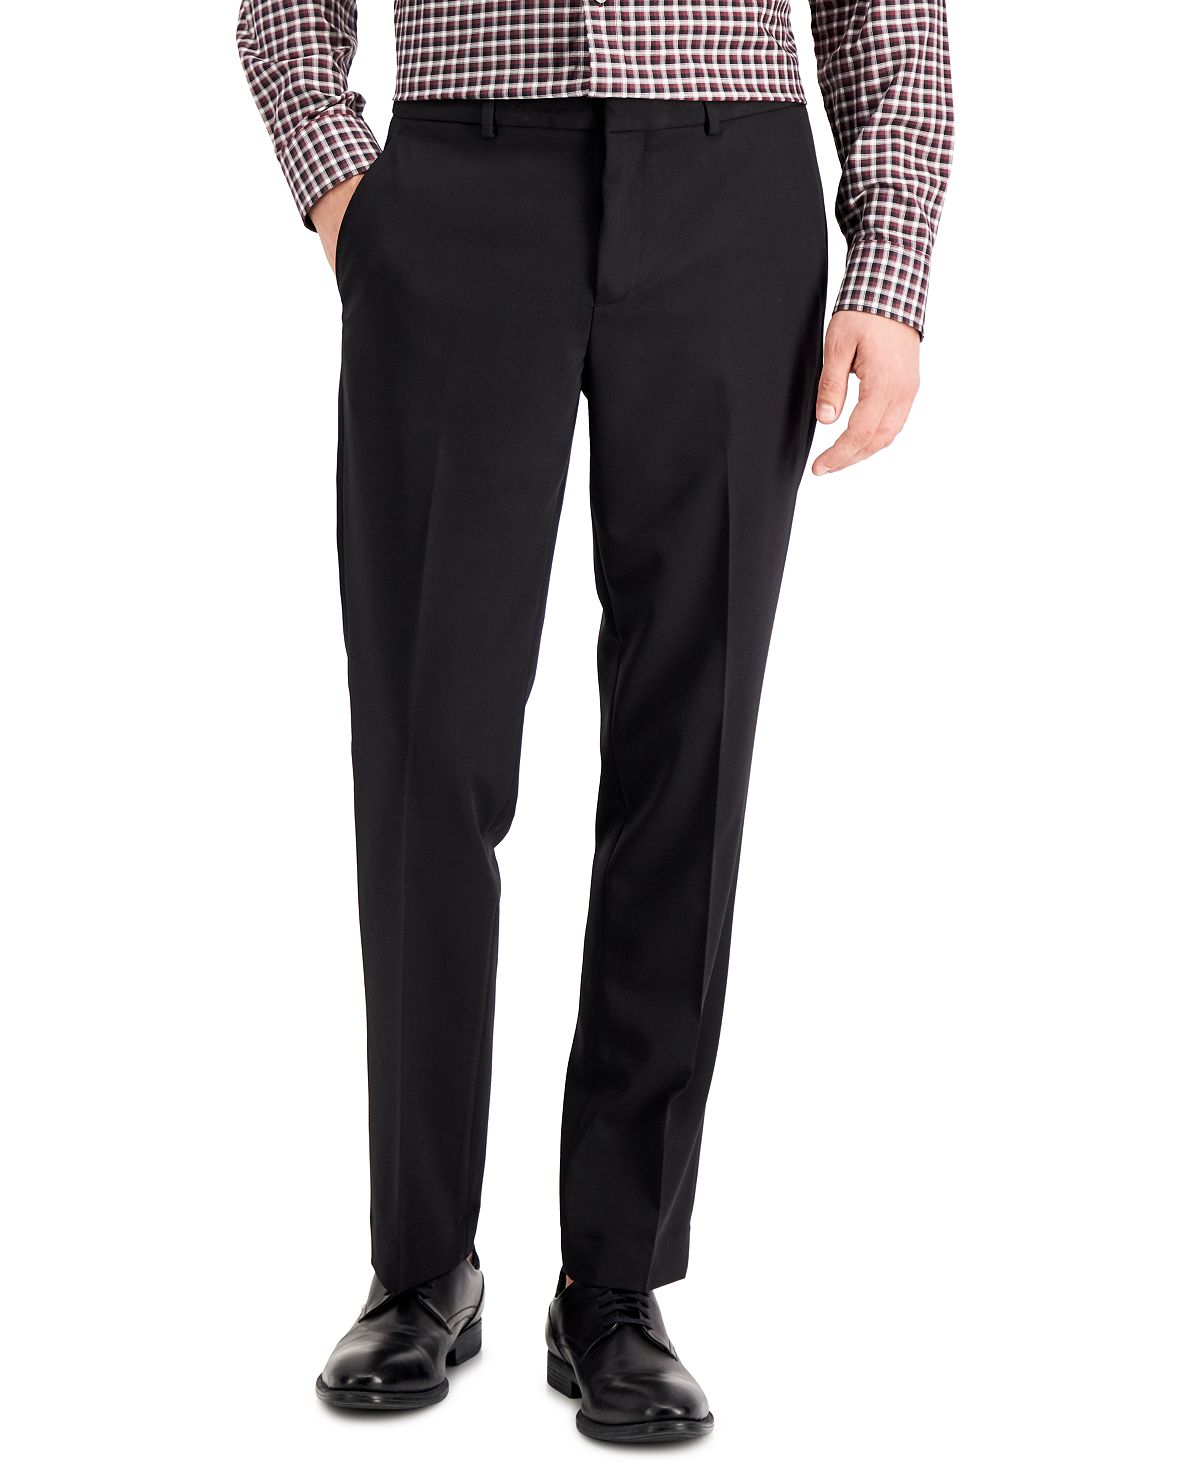 Мужские брюки modern-fit stretch solid resolution Perry Ellis Portfolio, черный